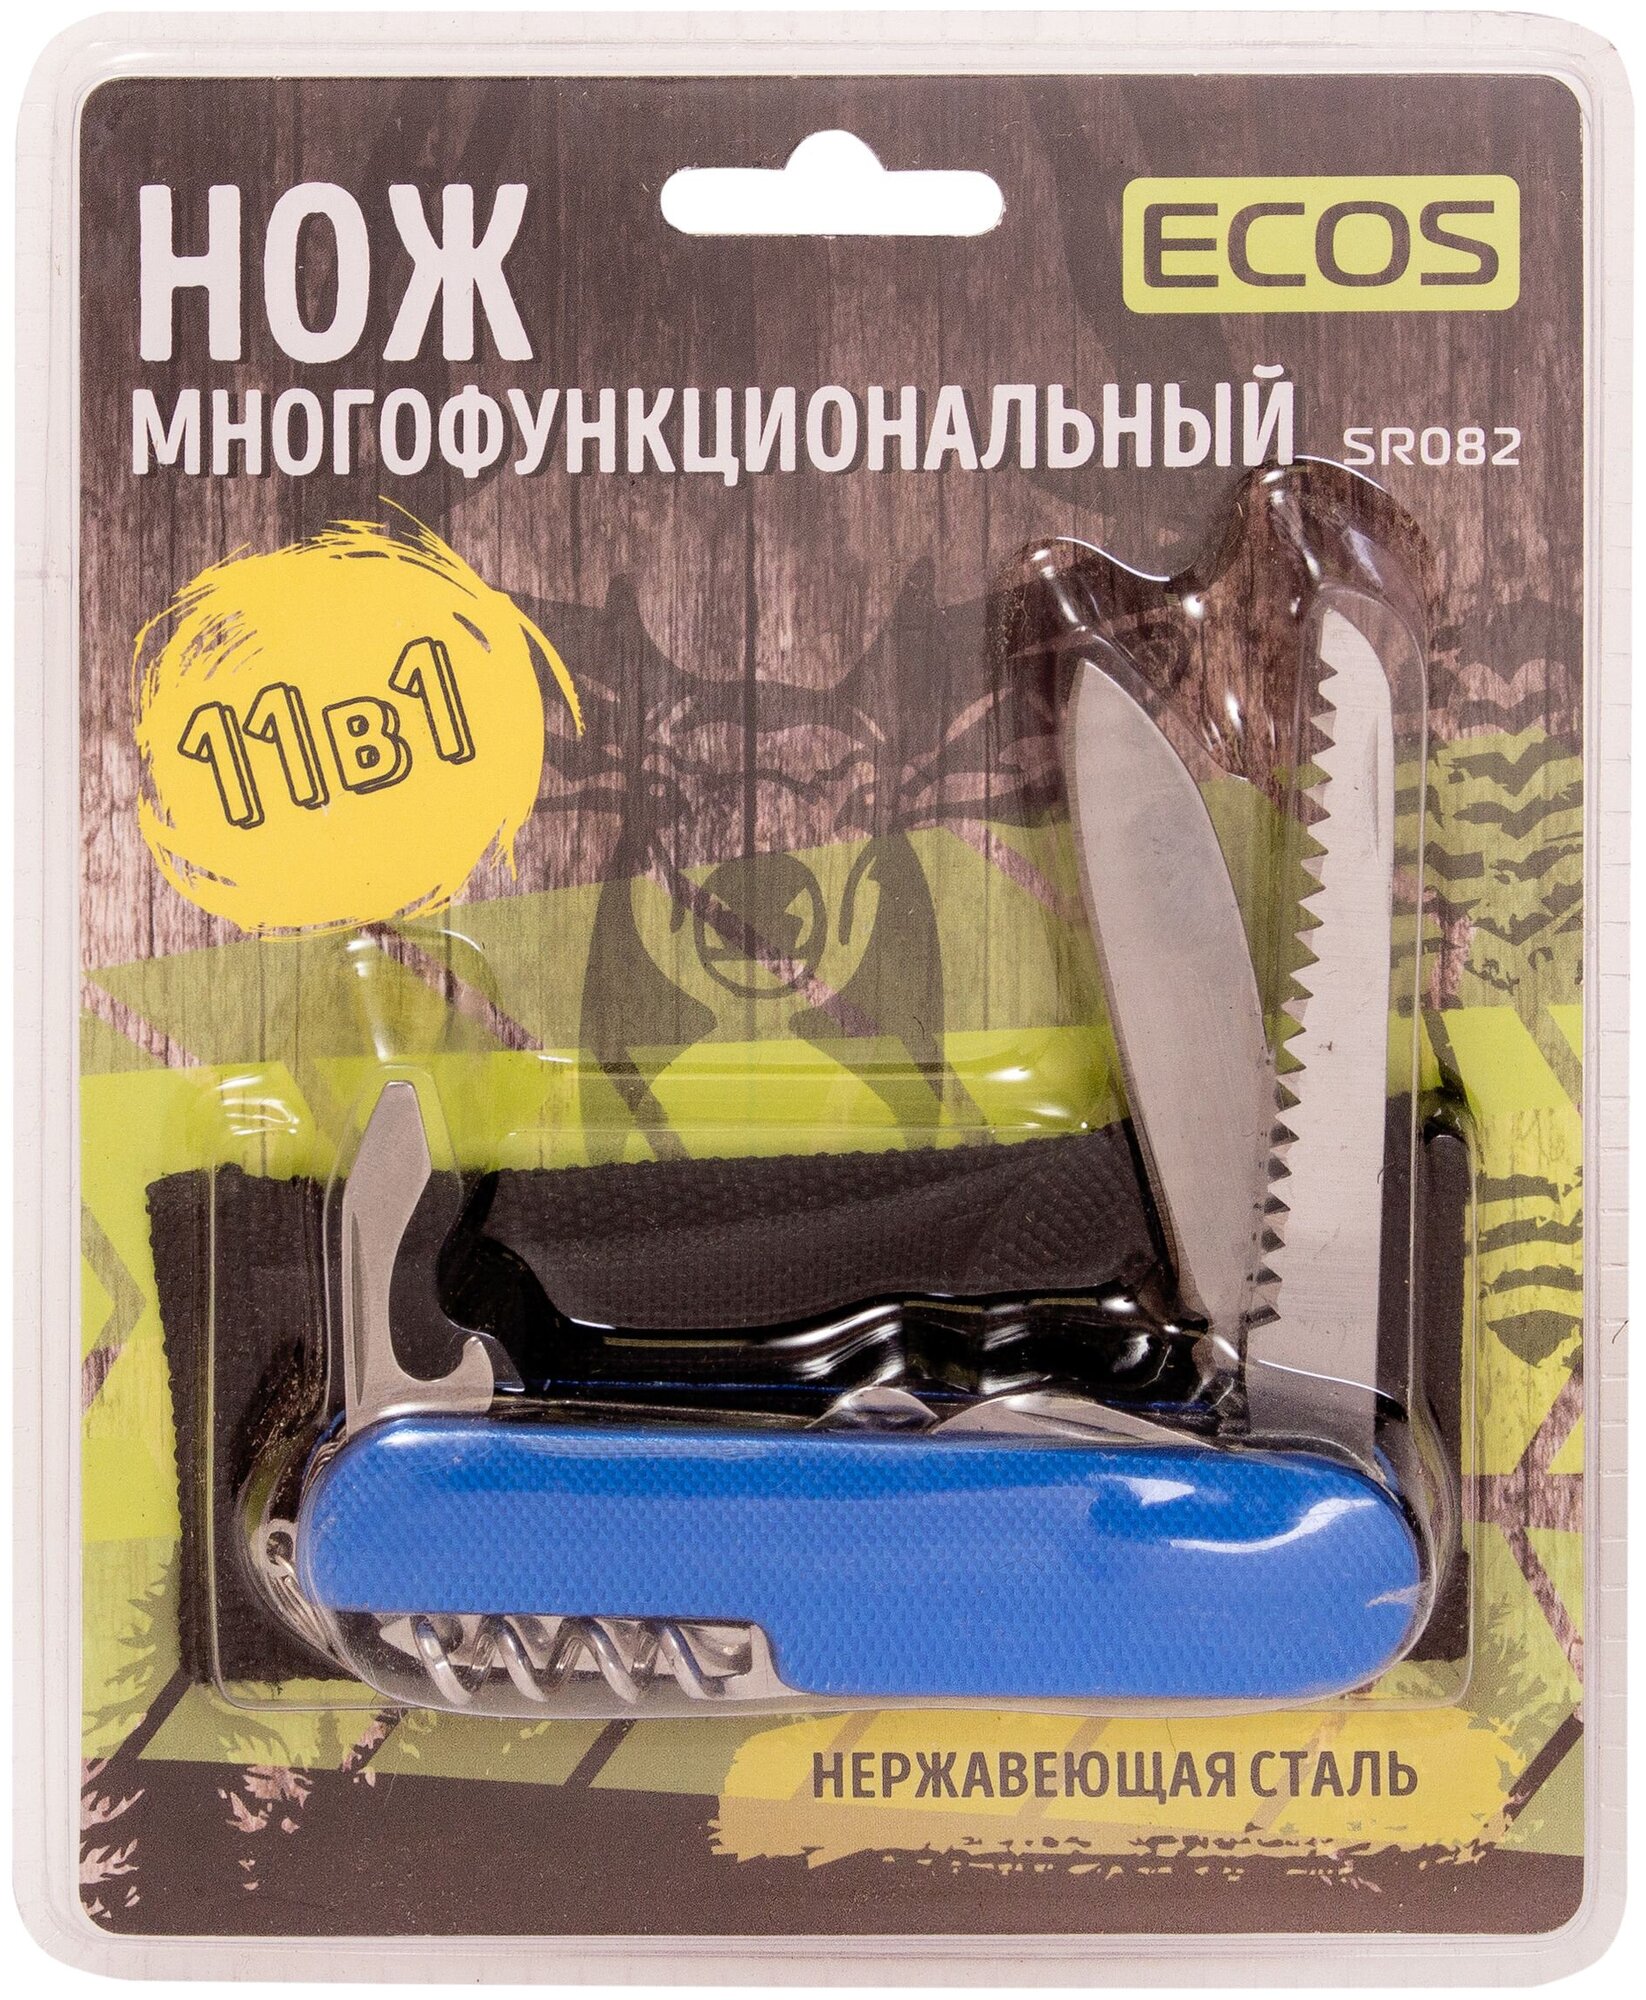 Нож многофункциональный (экос Нож многофункциональный т. м. ECOS, SR082, синий 325130)